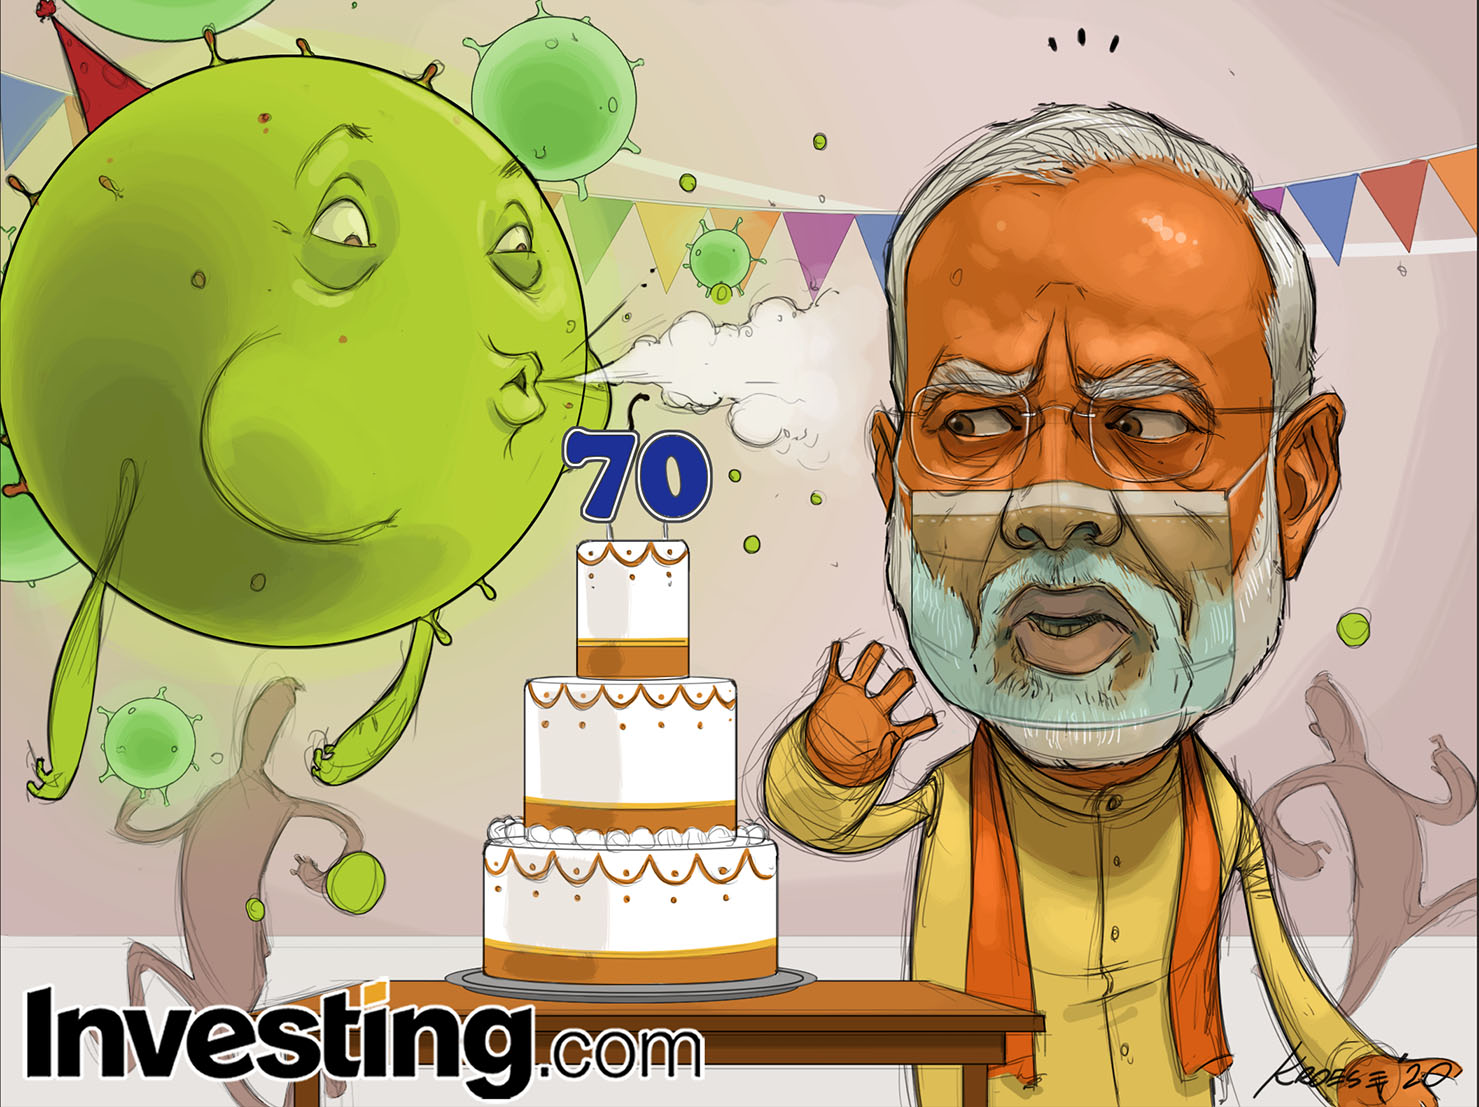 El aumento de casos de coronavirus en India arruina la celebración del 70 cumpleaños de Modi